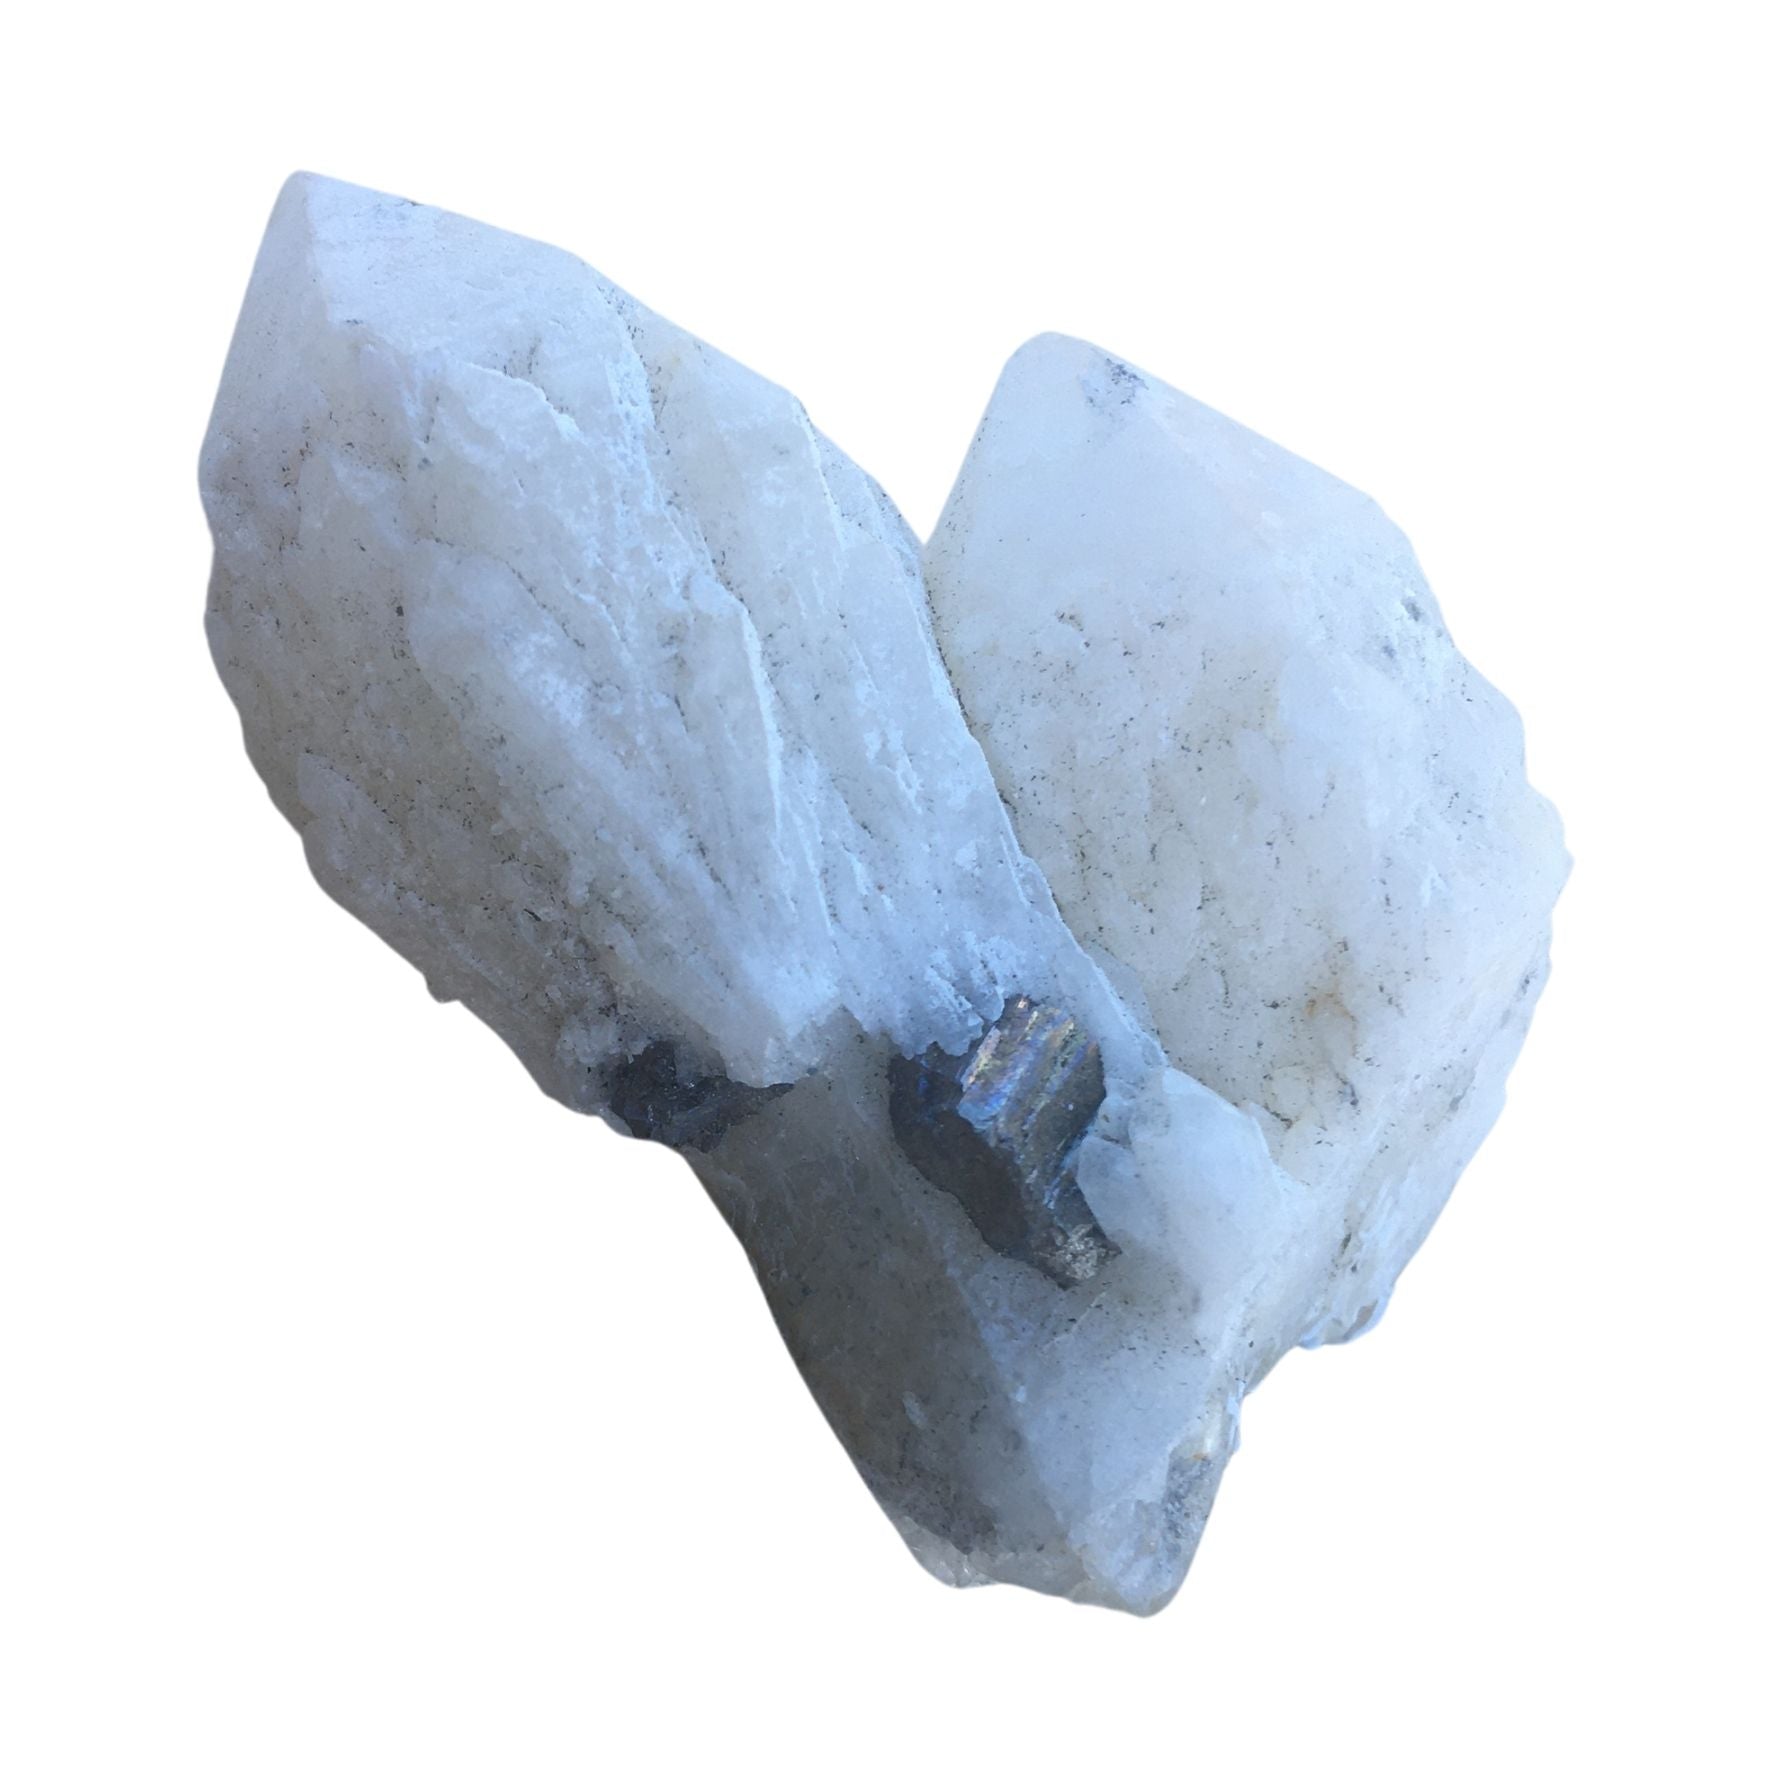 Arsenopyrite on quartz